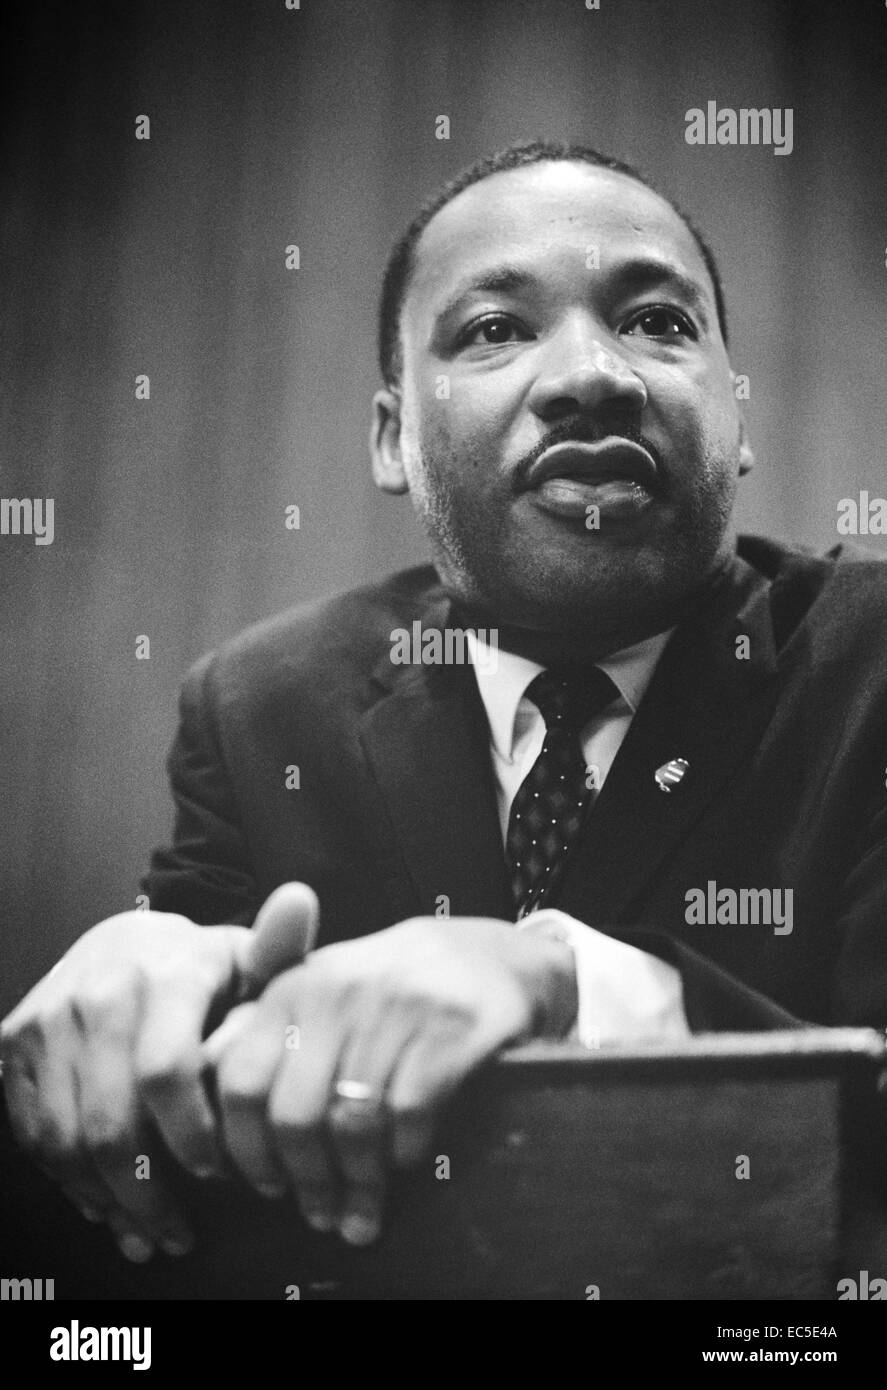 Martin Luther King jr. conférence de presse. La photographie montre la tête-et-épaules portrait du roi s'appuyant sur un lutrin. 1964 mar. 26. trikosko, Marion s., photographe. Banque D'Images